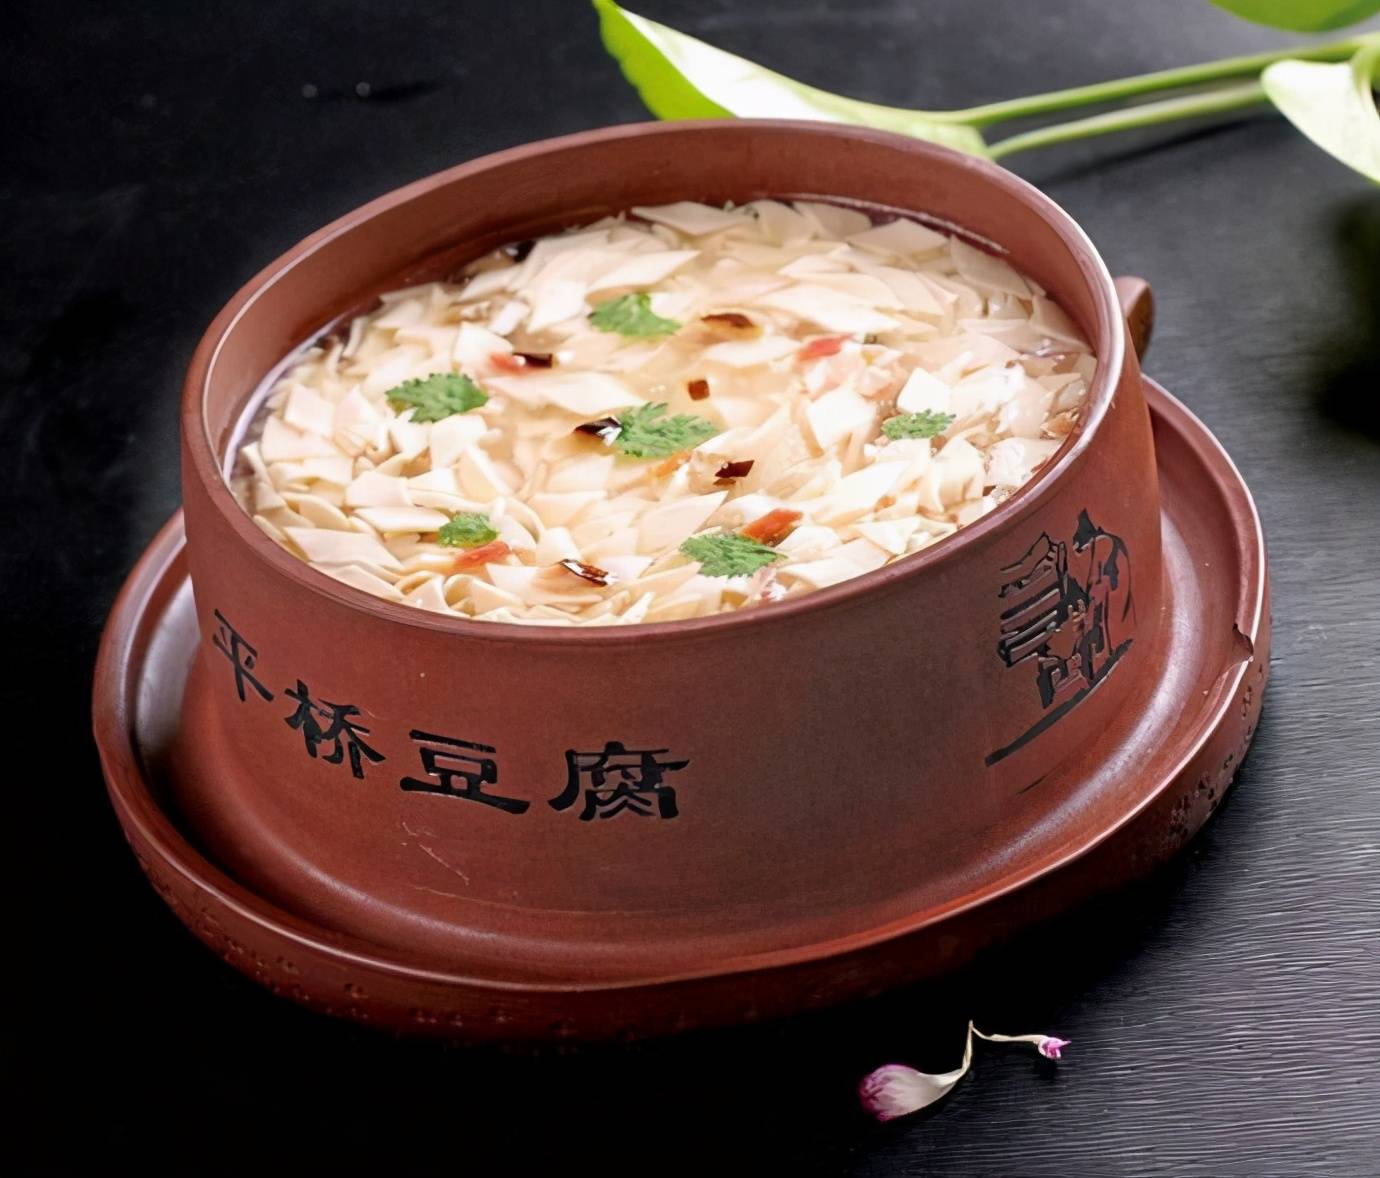 文楼汤包因淮安古镇文楼而得名,是当地的传统名小吃